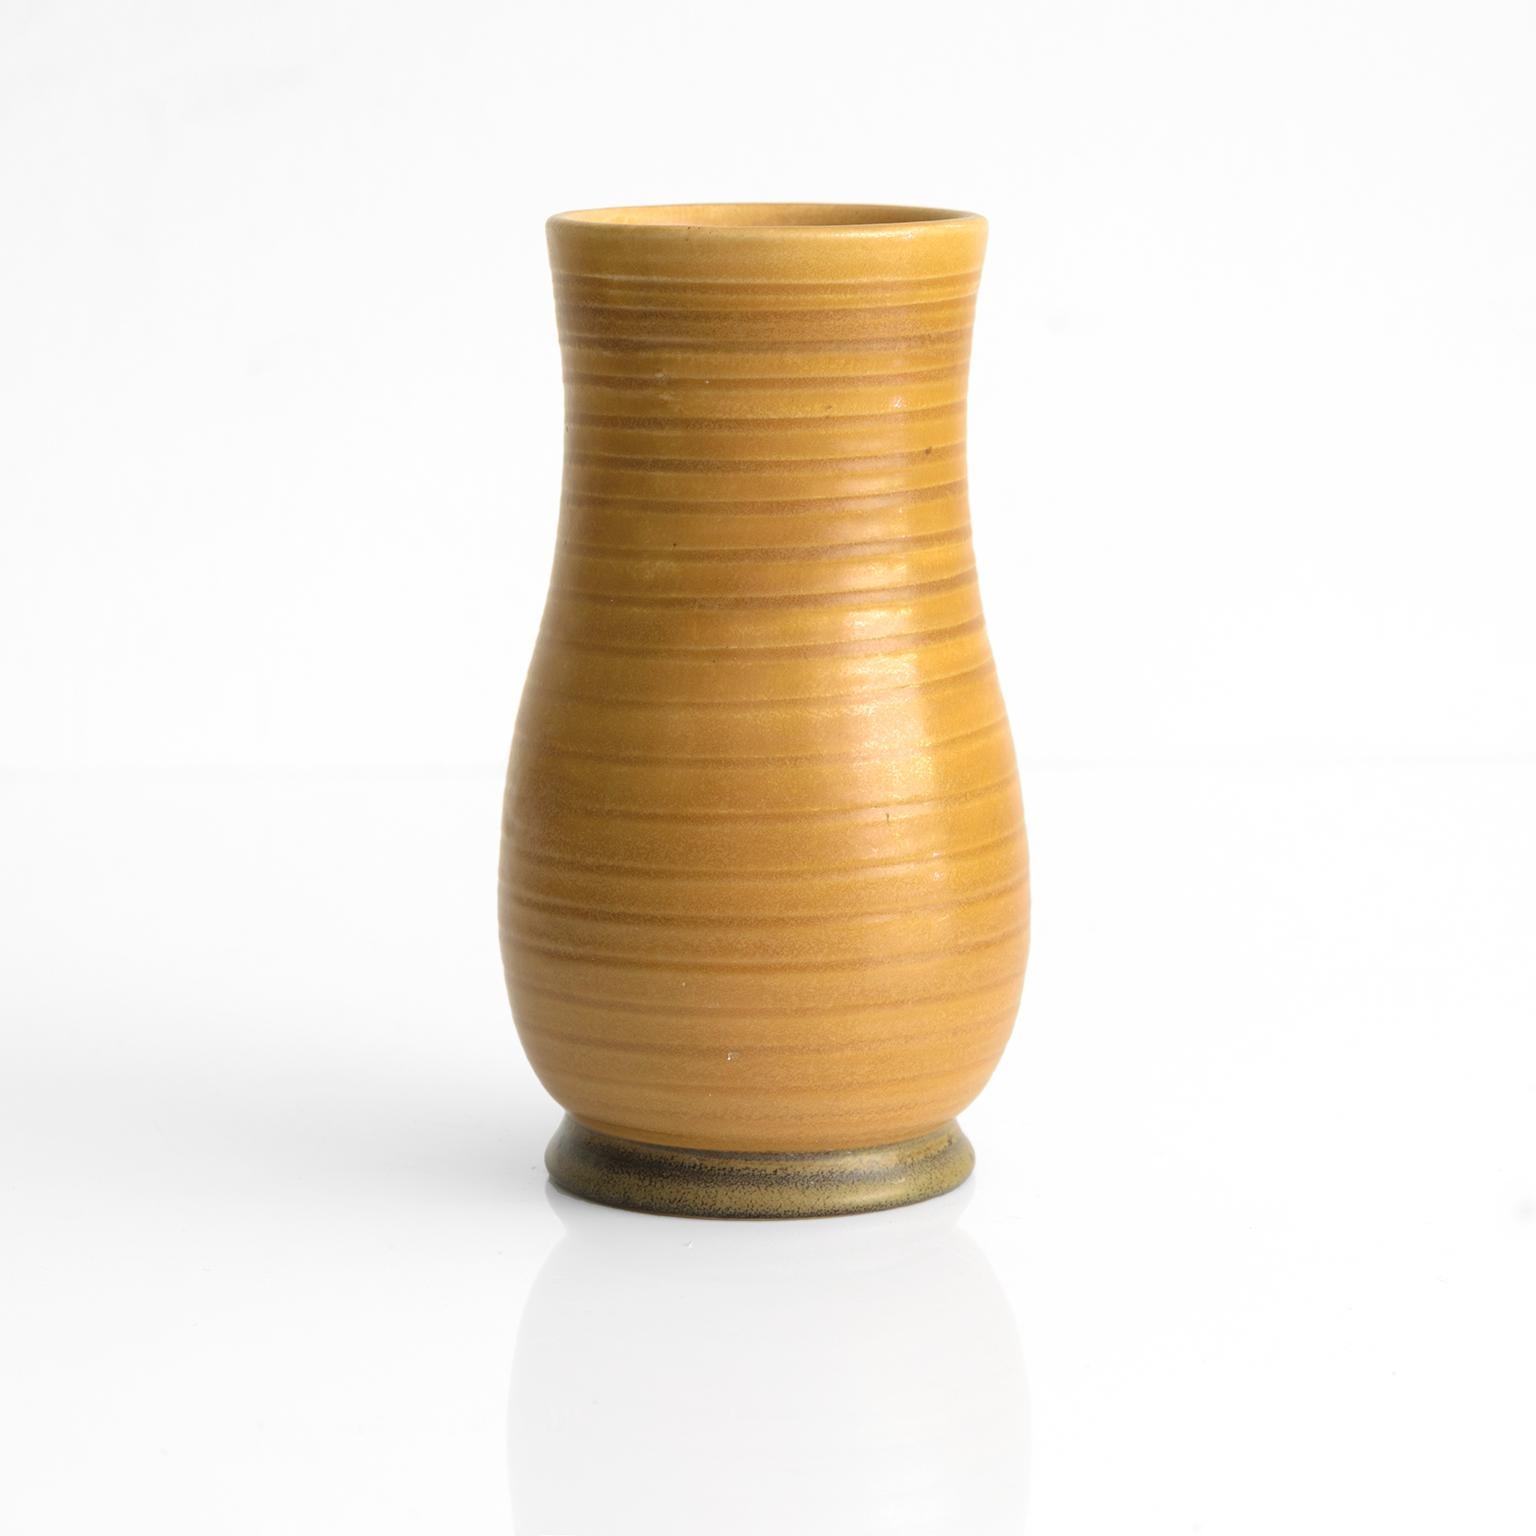 Schwedische Vase des Künstlers und Keramikkünstlers Ewald Dahlskog mit tiefem Relief und goldener Glasur. Die sanfte spiralförmige Linie folgt der Form der Vasen, die von dem sanft abgeschrägten Fuß ausgeht. Handgefertigt von Dahlskog in Bo Fajans,